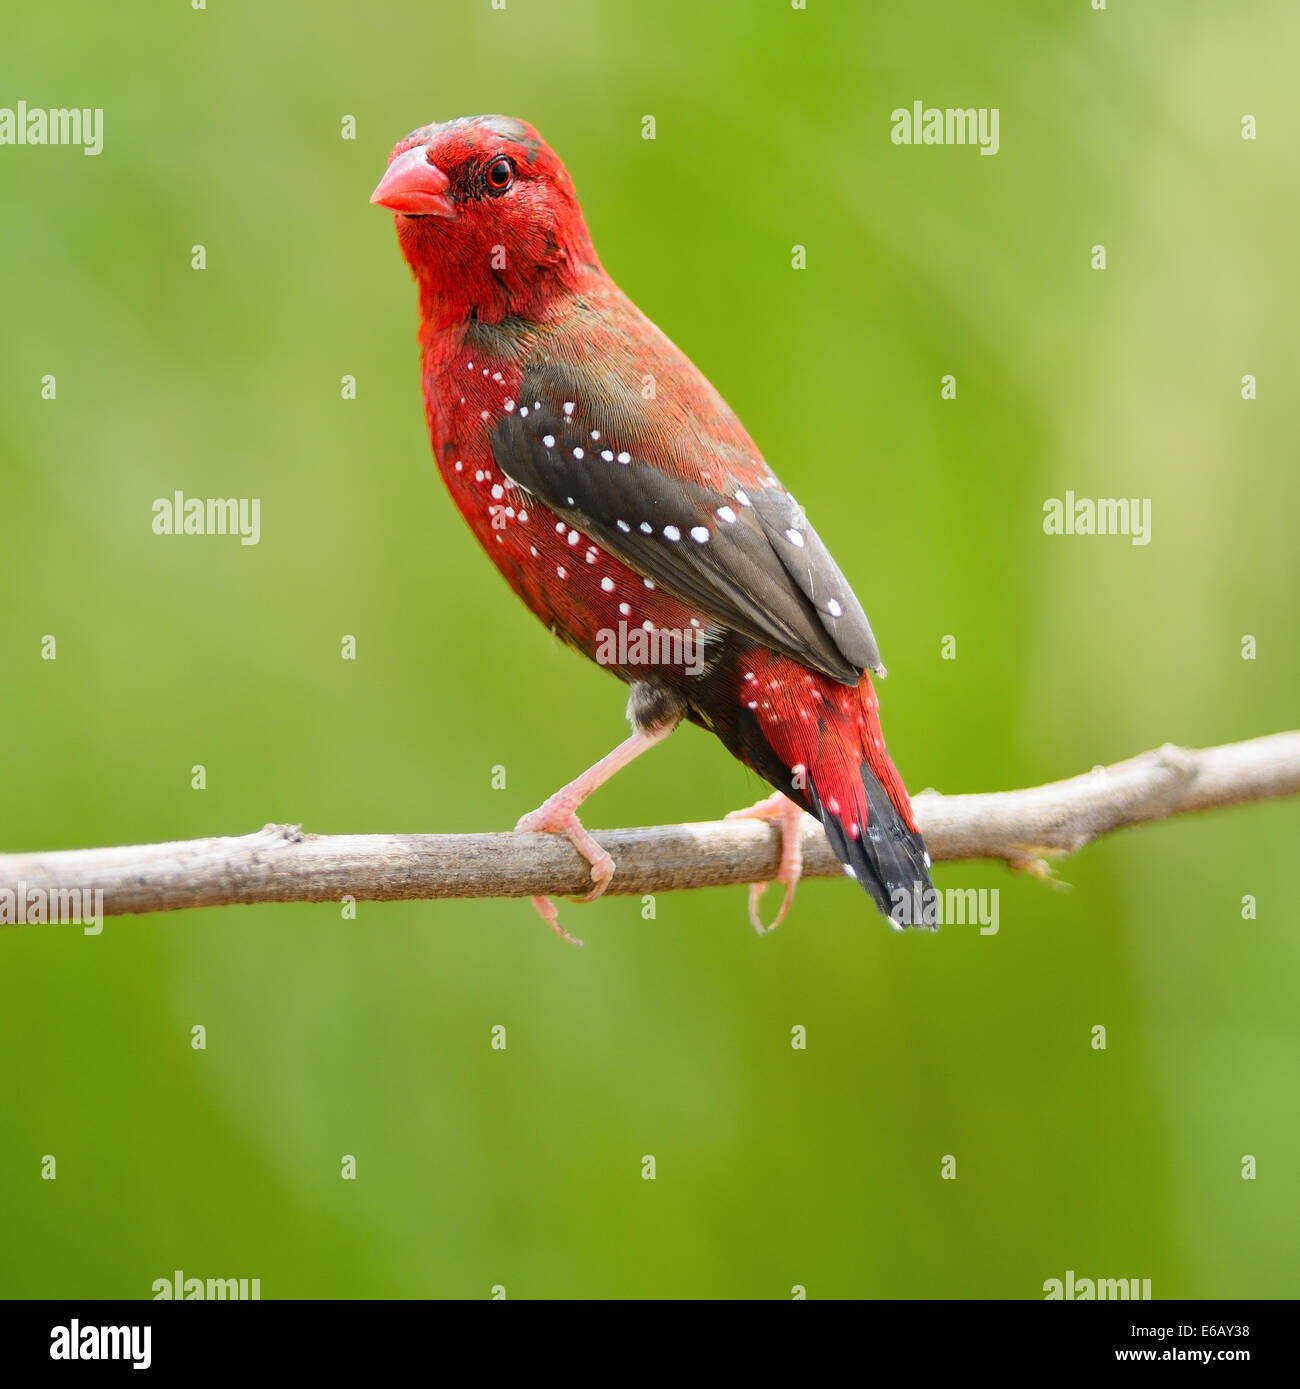 Schönen roten Vogel, Reifen männlichen rot Avadavat (Amandava Amandava) auf  der Brutzeit Gefieder, Seite und Rücken Profil Stockfotografie - Alamy